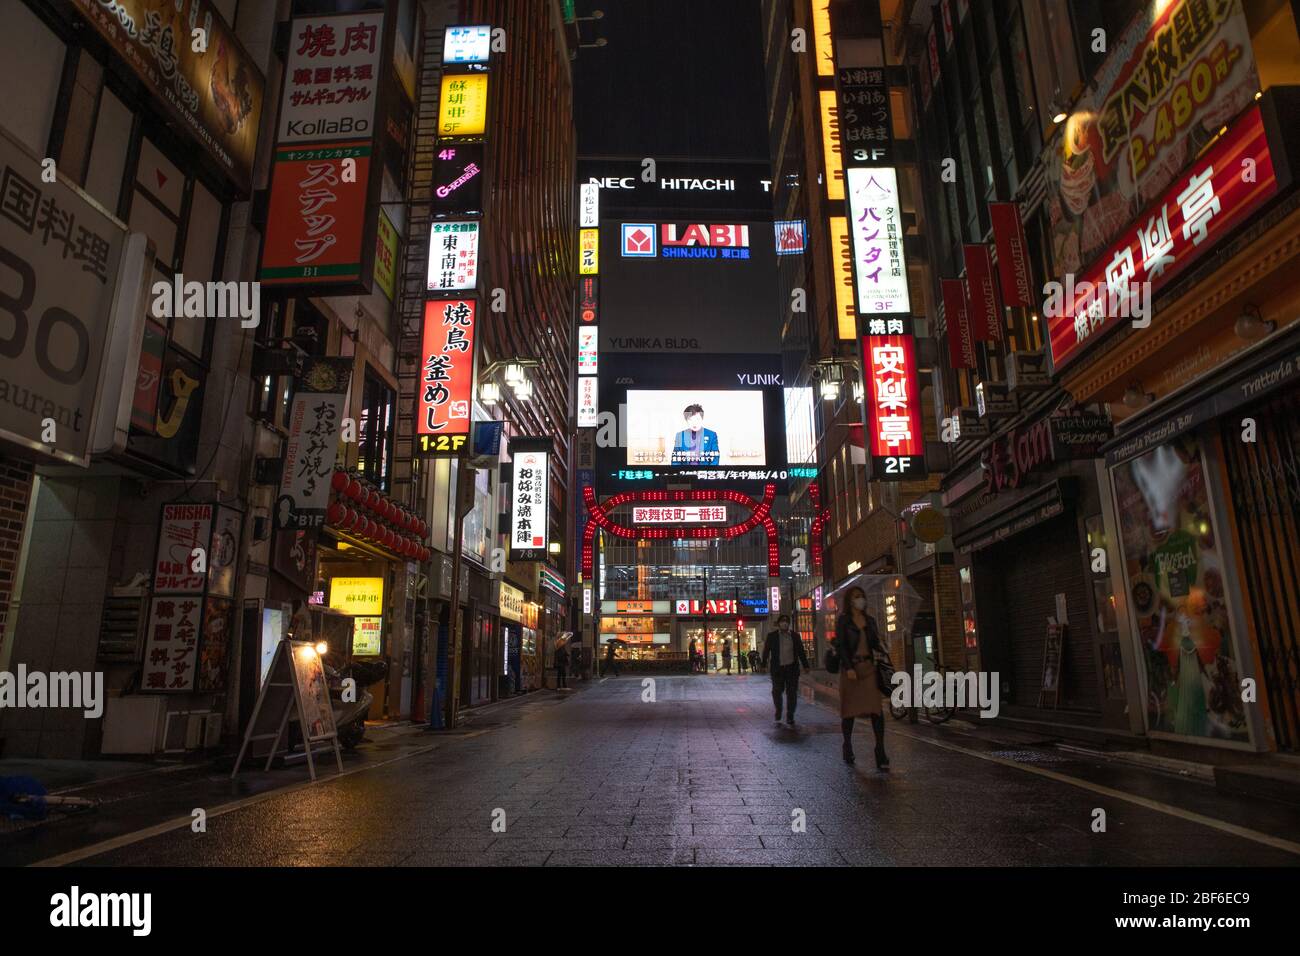 Ein Bildschirm zeigt eine öffentliche Informations-Video-Nachricht von Tokyo Gouverneur Yuriko Koike in Shinjuku berühmten Kabukicho Gebiet in Tokio, Japan am 16. April 2020, inmitten des Ausnahmezustands aufgrund der Ausbreitung des neuartigen Coronavirus. Quelle: AFLO/Alamy Live News Stockfoto